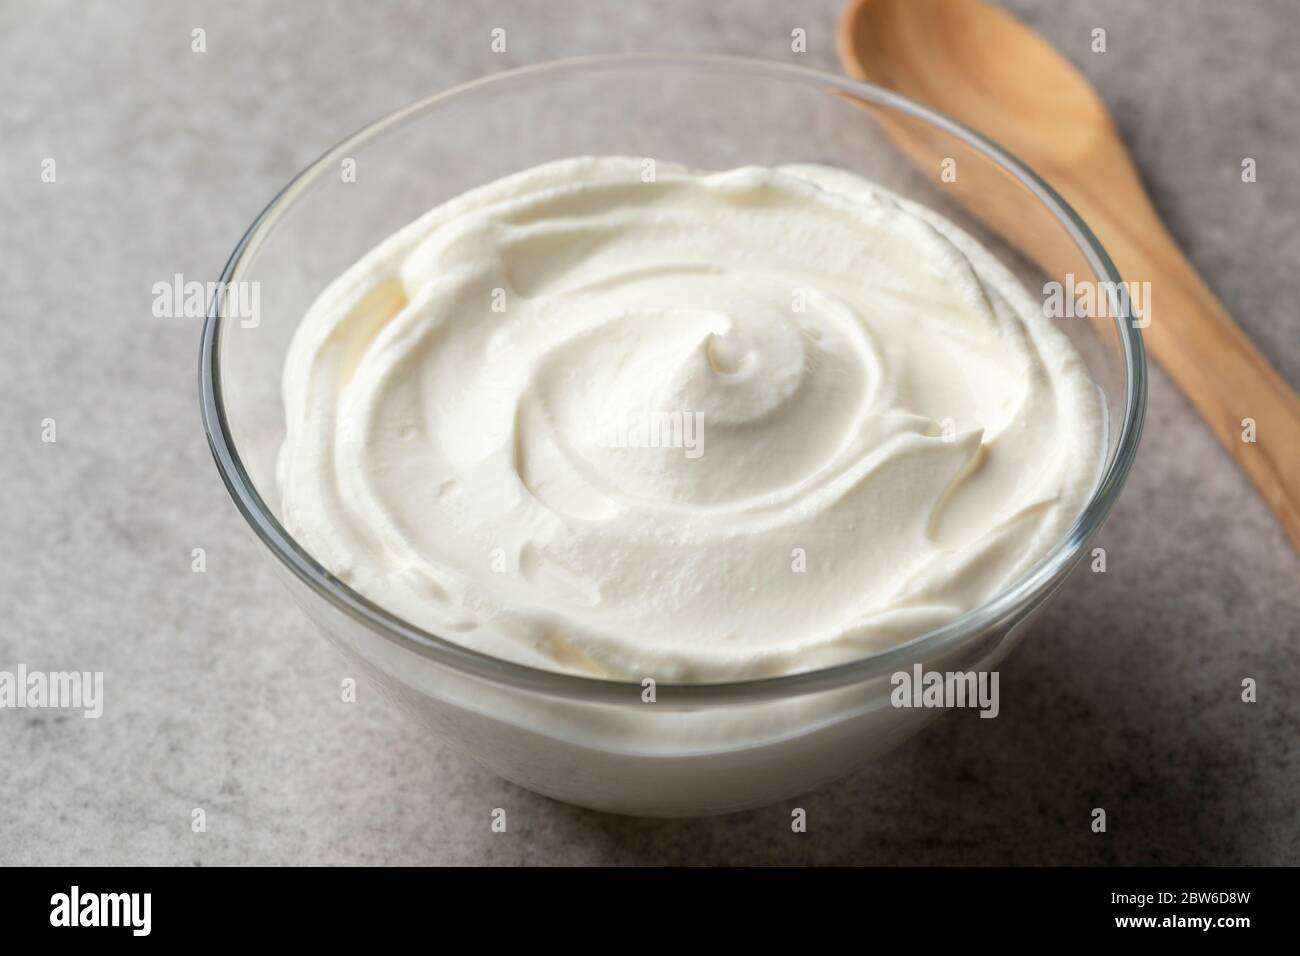 Fresh plain creme fraiche in a bowl as an ingredient Stock Photo